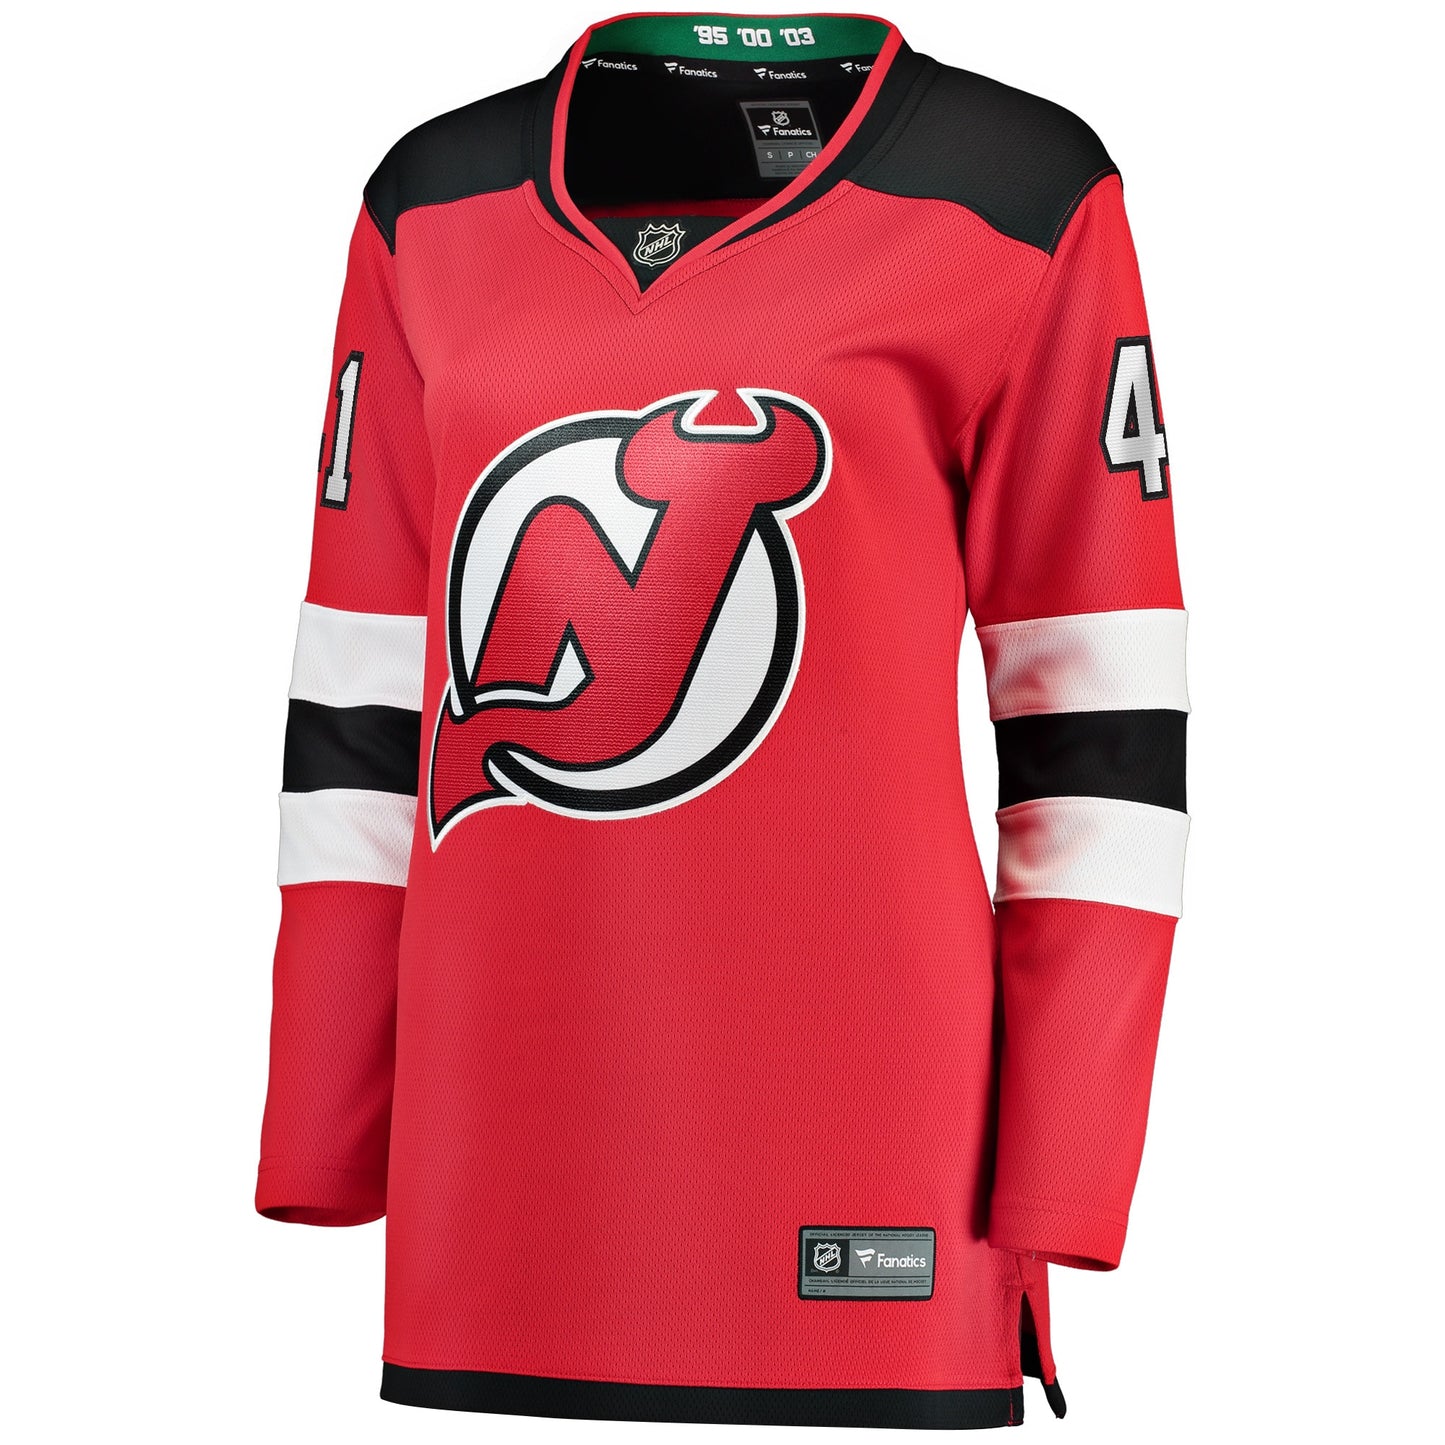 Vitek Vanecek New Jersey Devils Fanatics Branded Women's Home Breakaway Player Jersey - Red